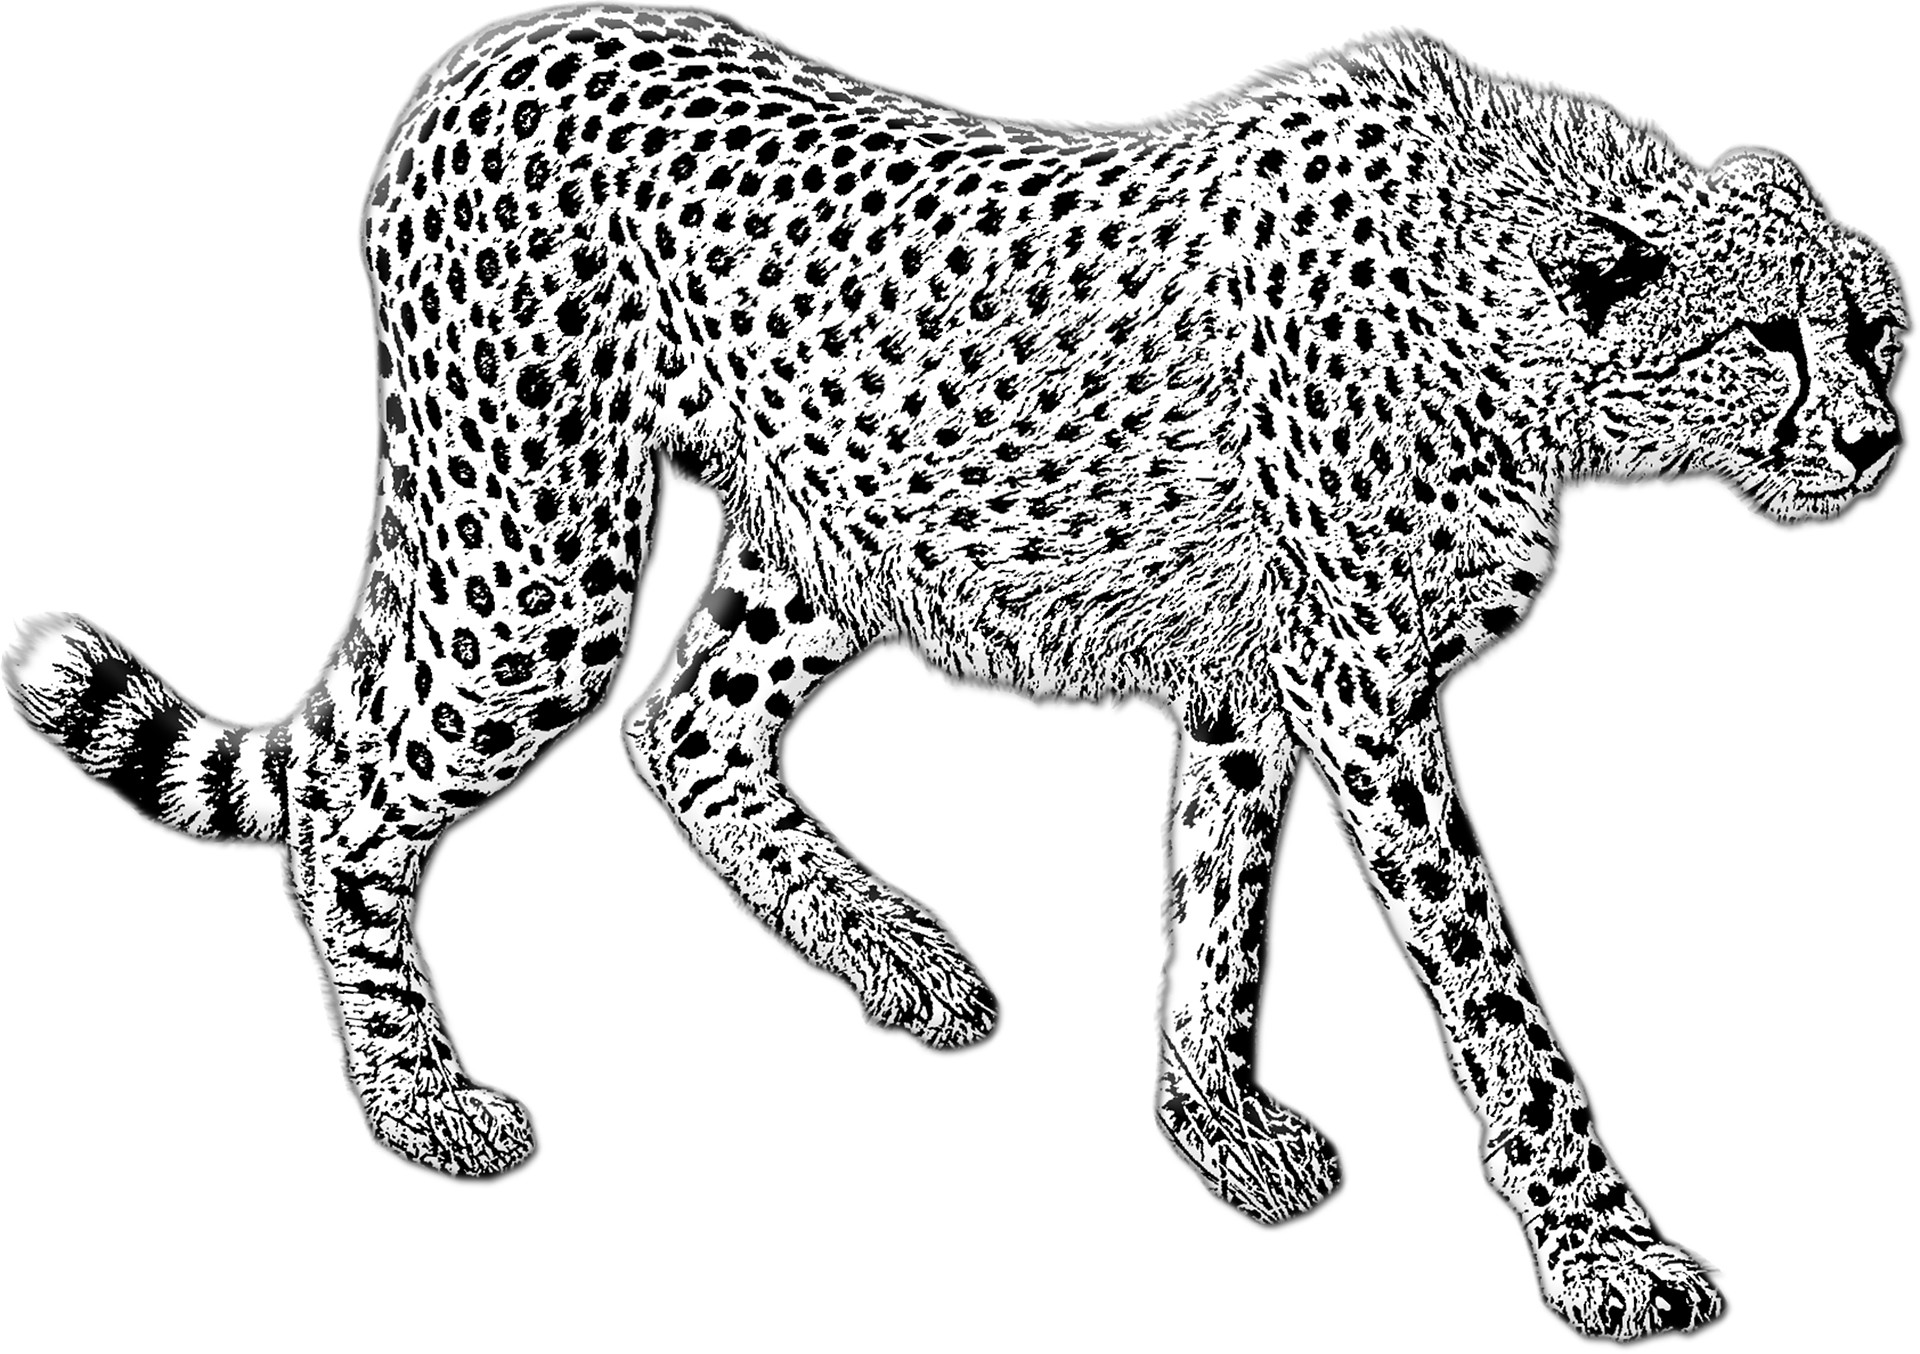 Disegno da colorare di ghepardo realistico che cammina